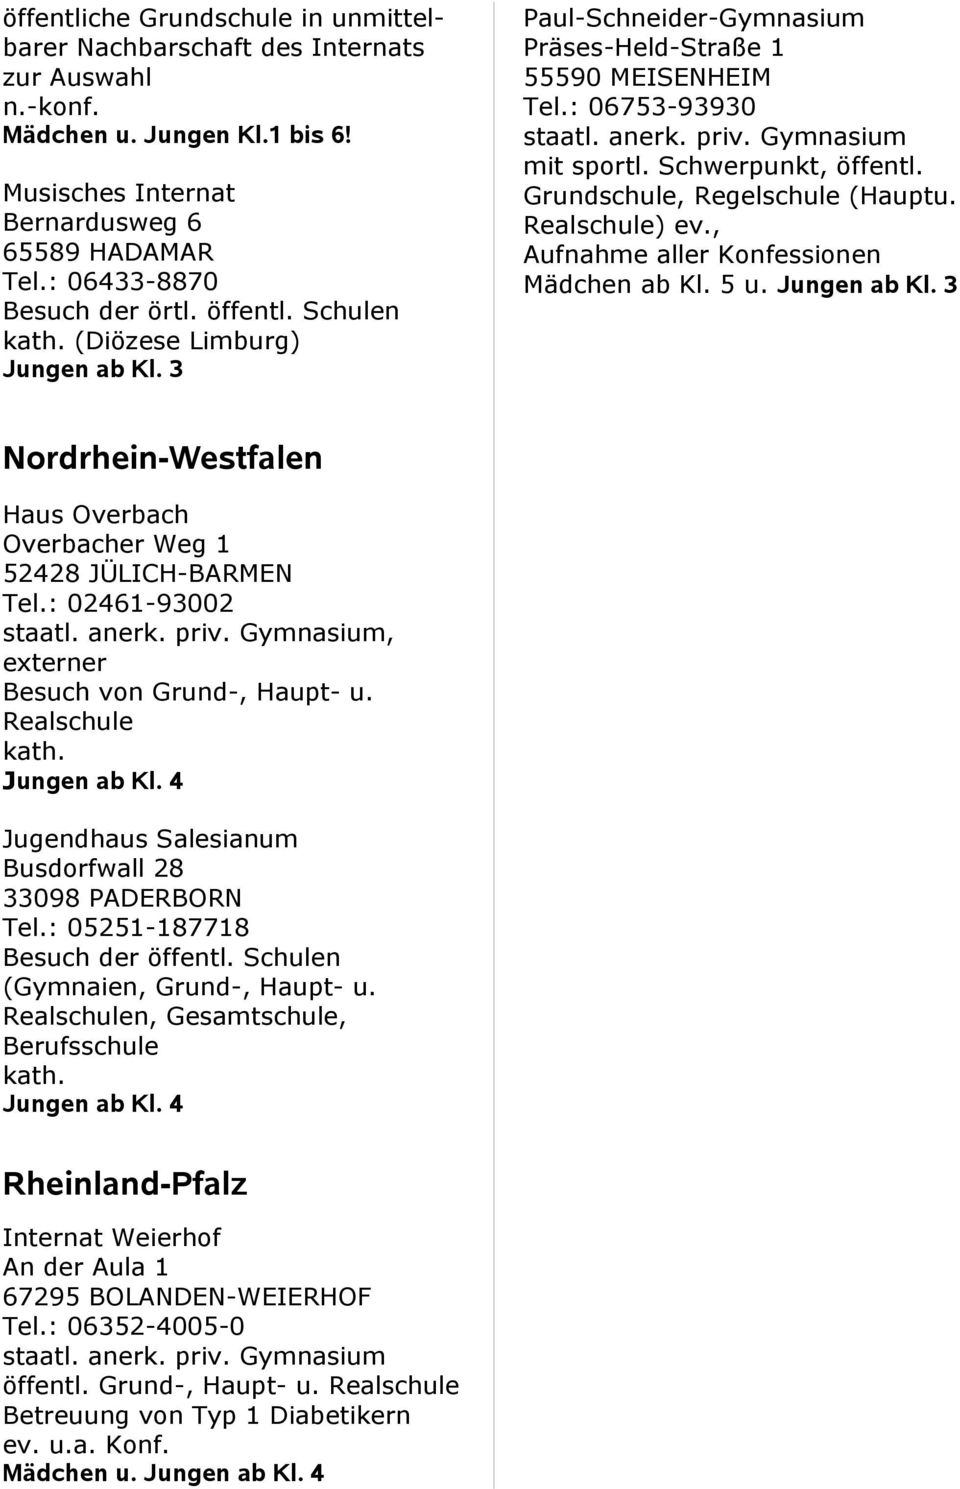 Realschule), Aufnahme aller Konfessionen Mädchen ab Kl. 5 u. ab Kl. 3 Nordrhein-Westfalen Haus Overbach Overbacher Weg 1 52428 JÜLICH-BARMEN Tel.: 02461-93002 staatl. anerk. priv.